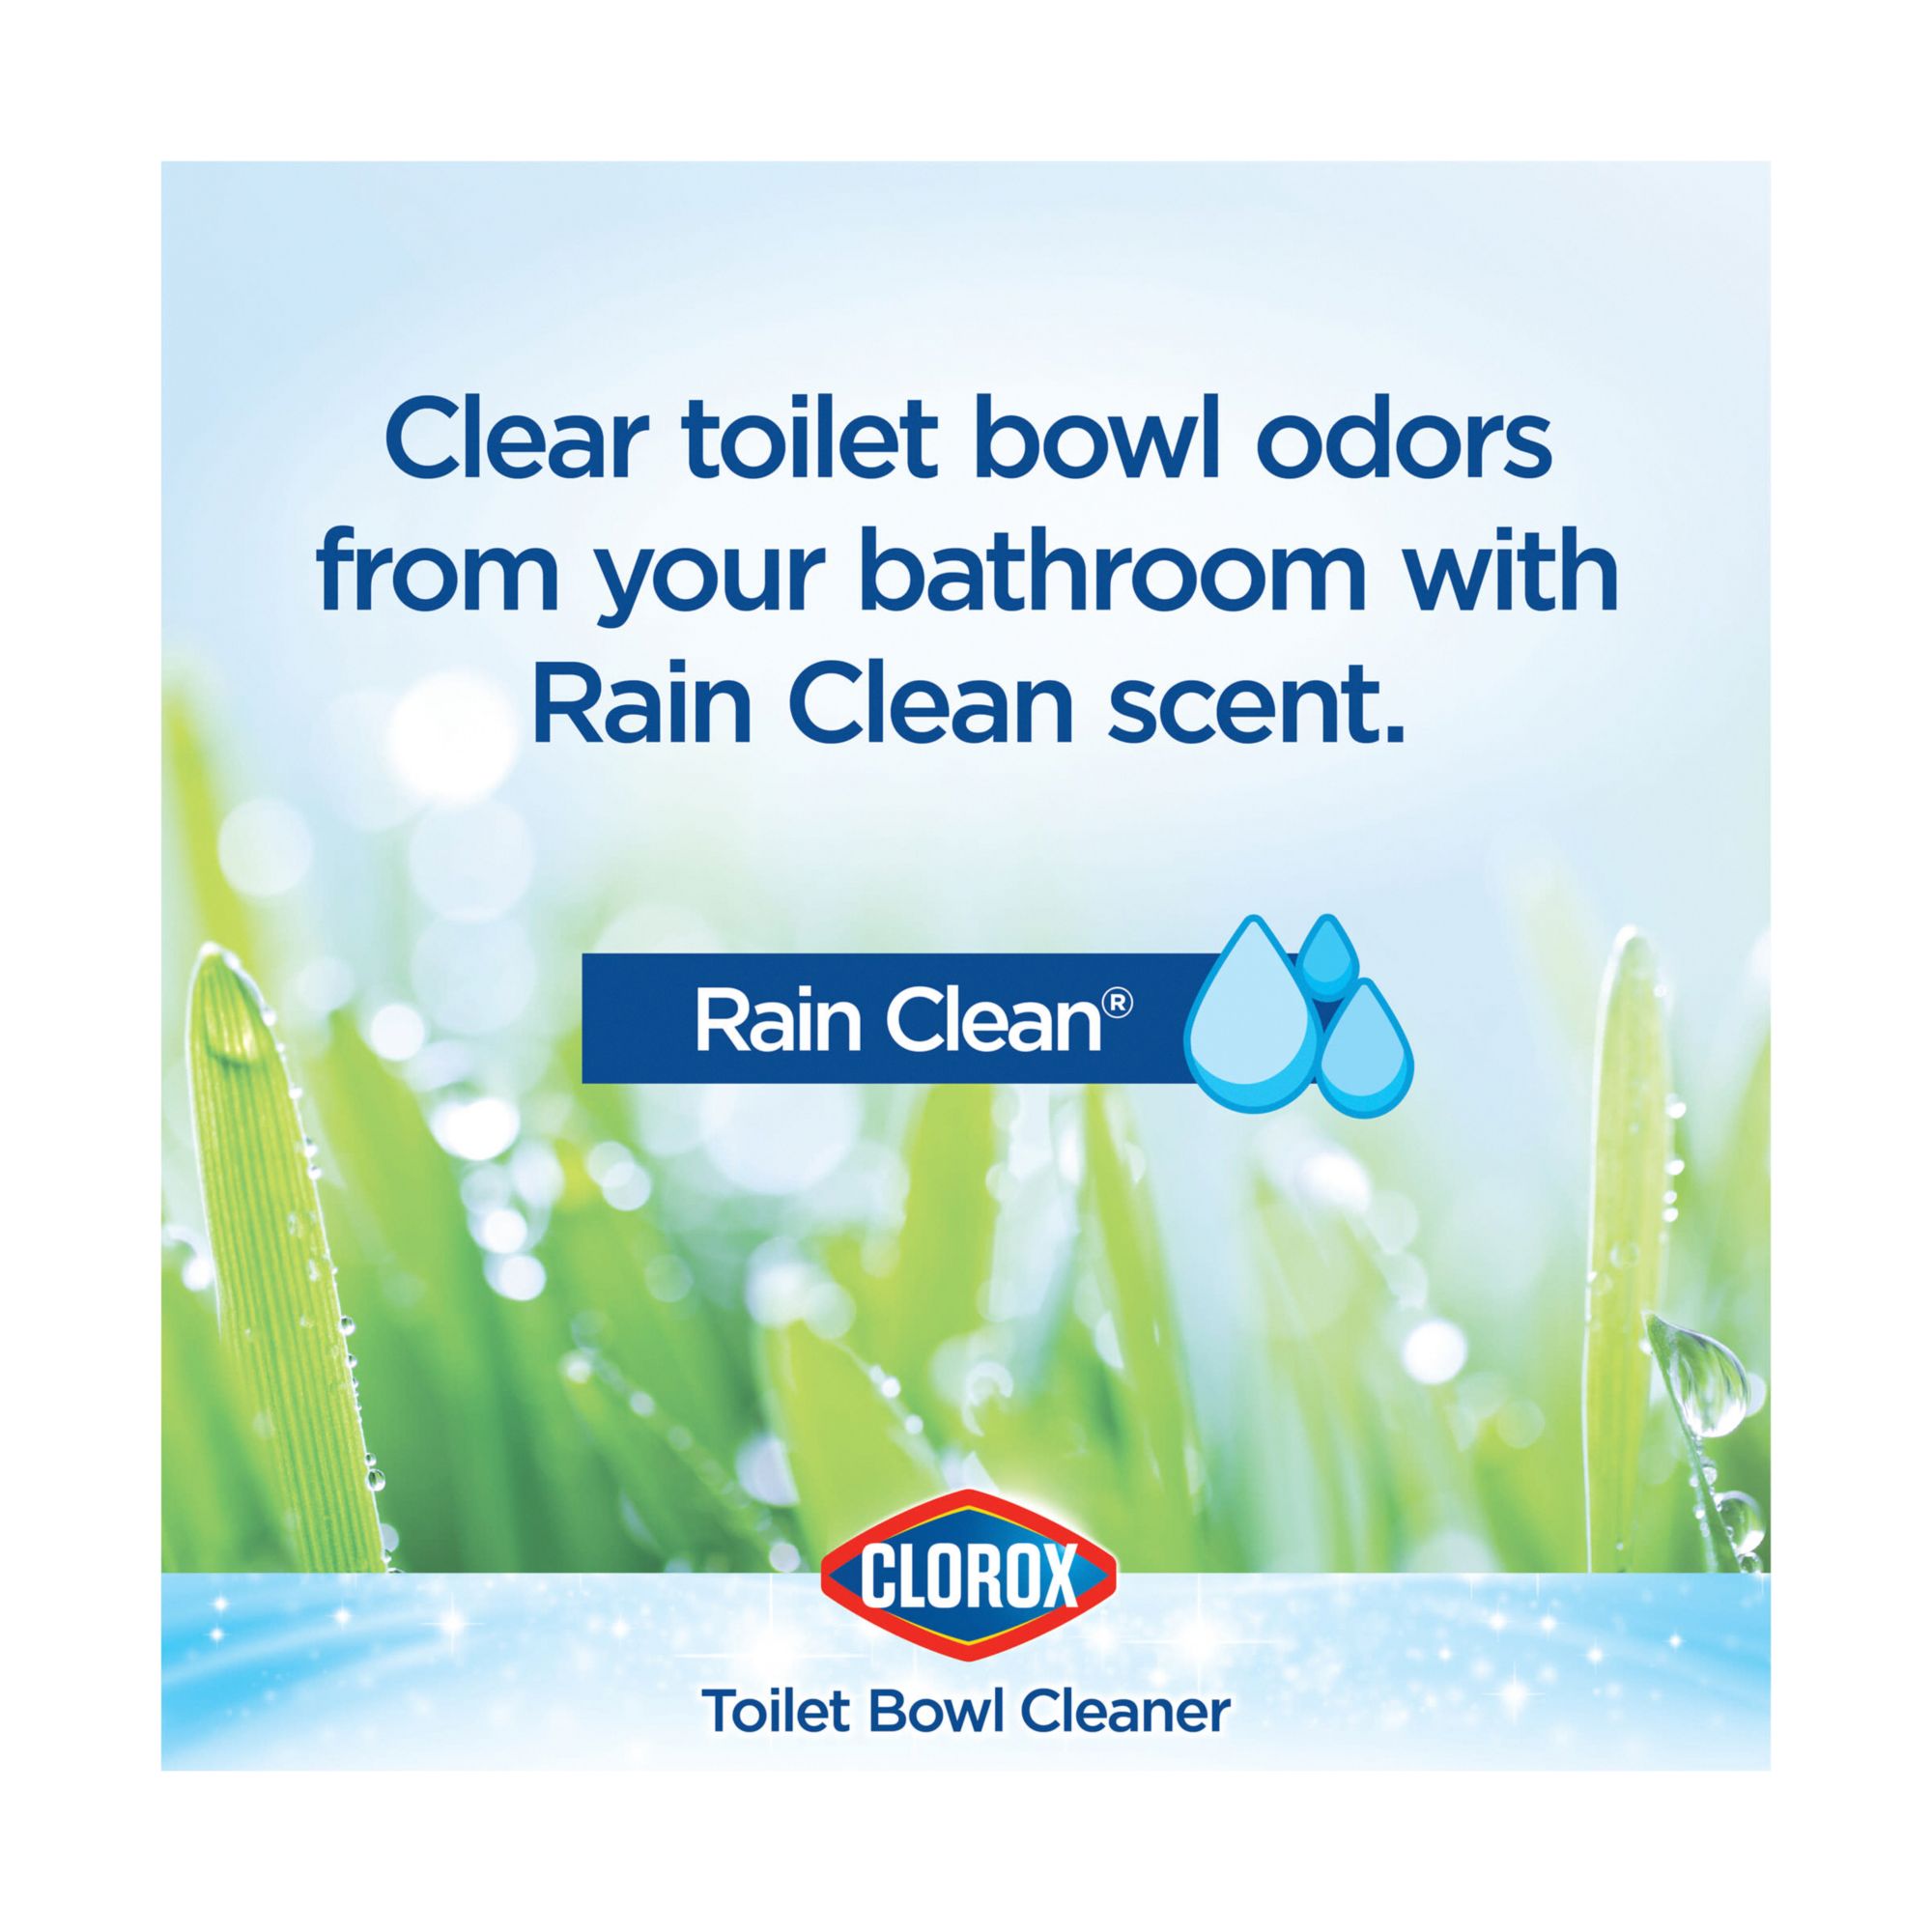 Clorox Cleaner + Bleach, Rain Clean